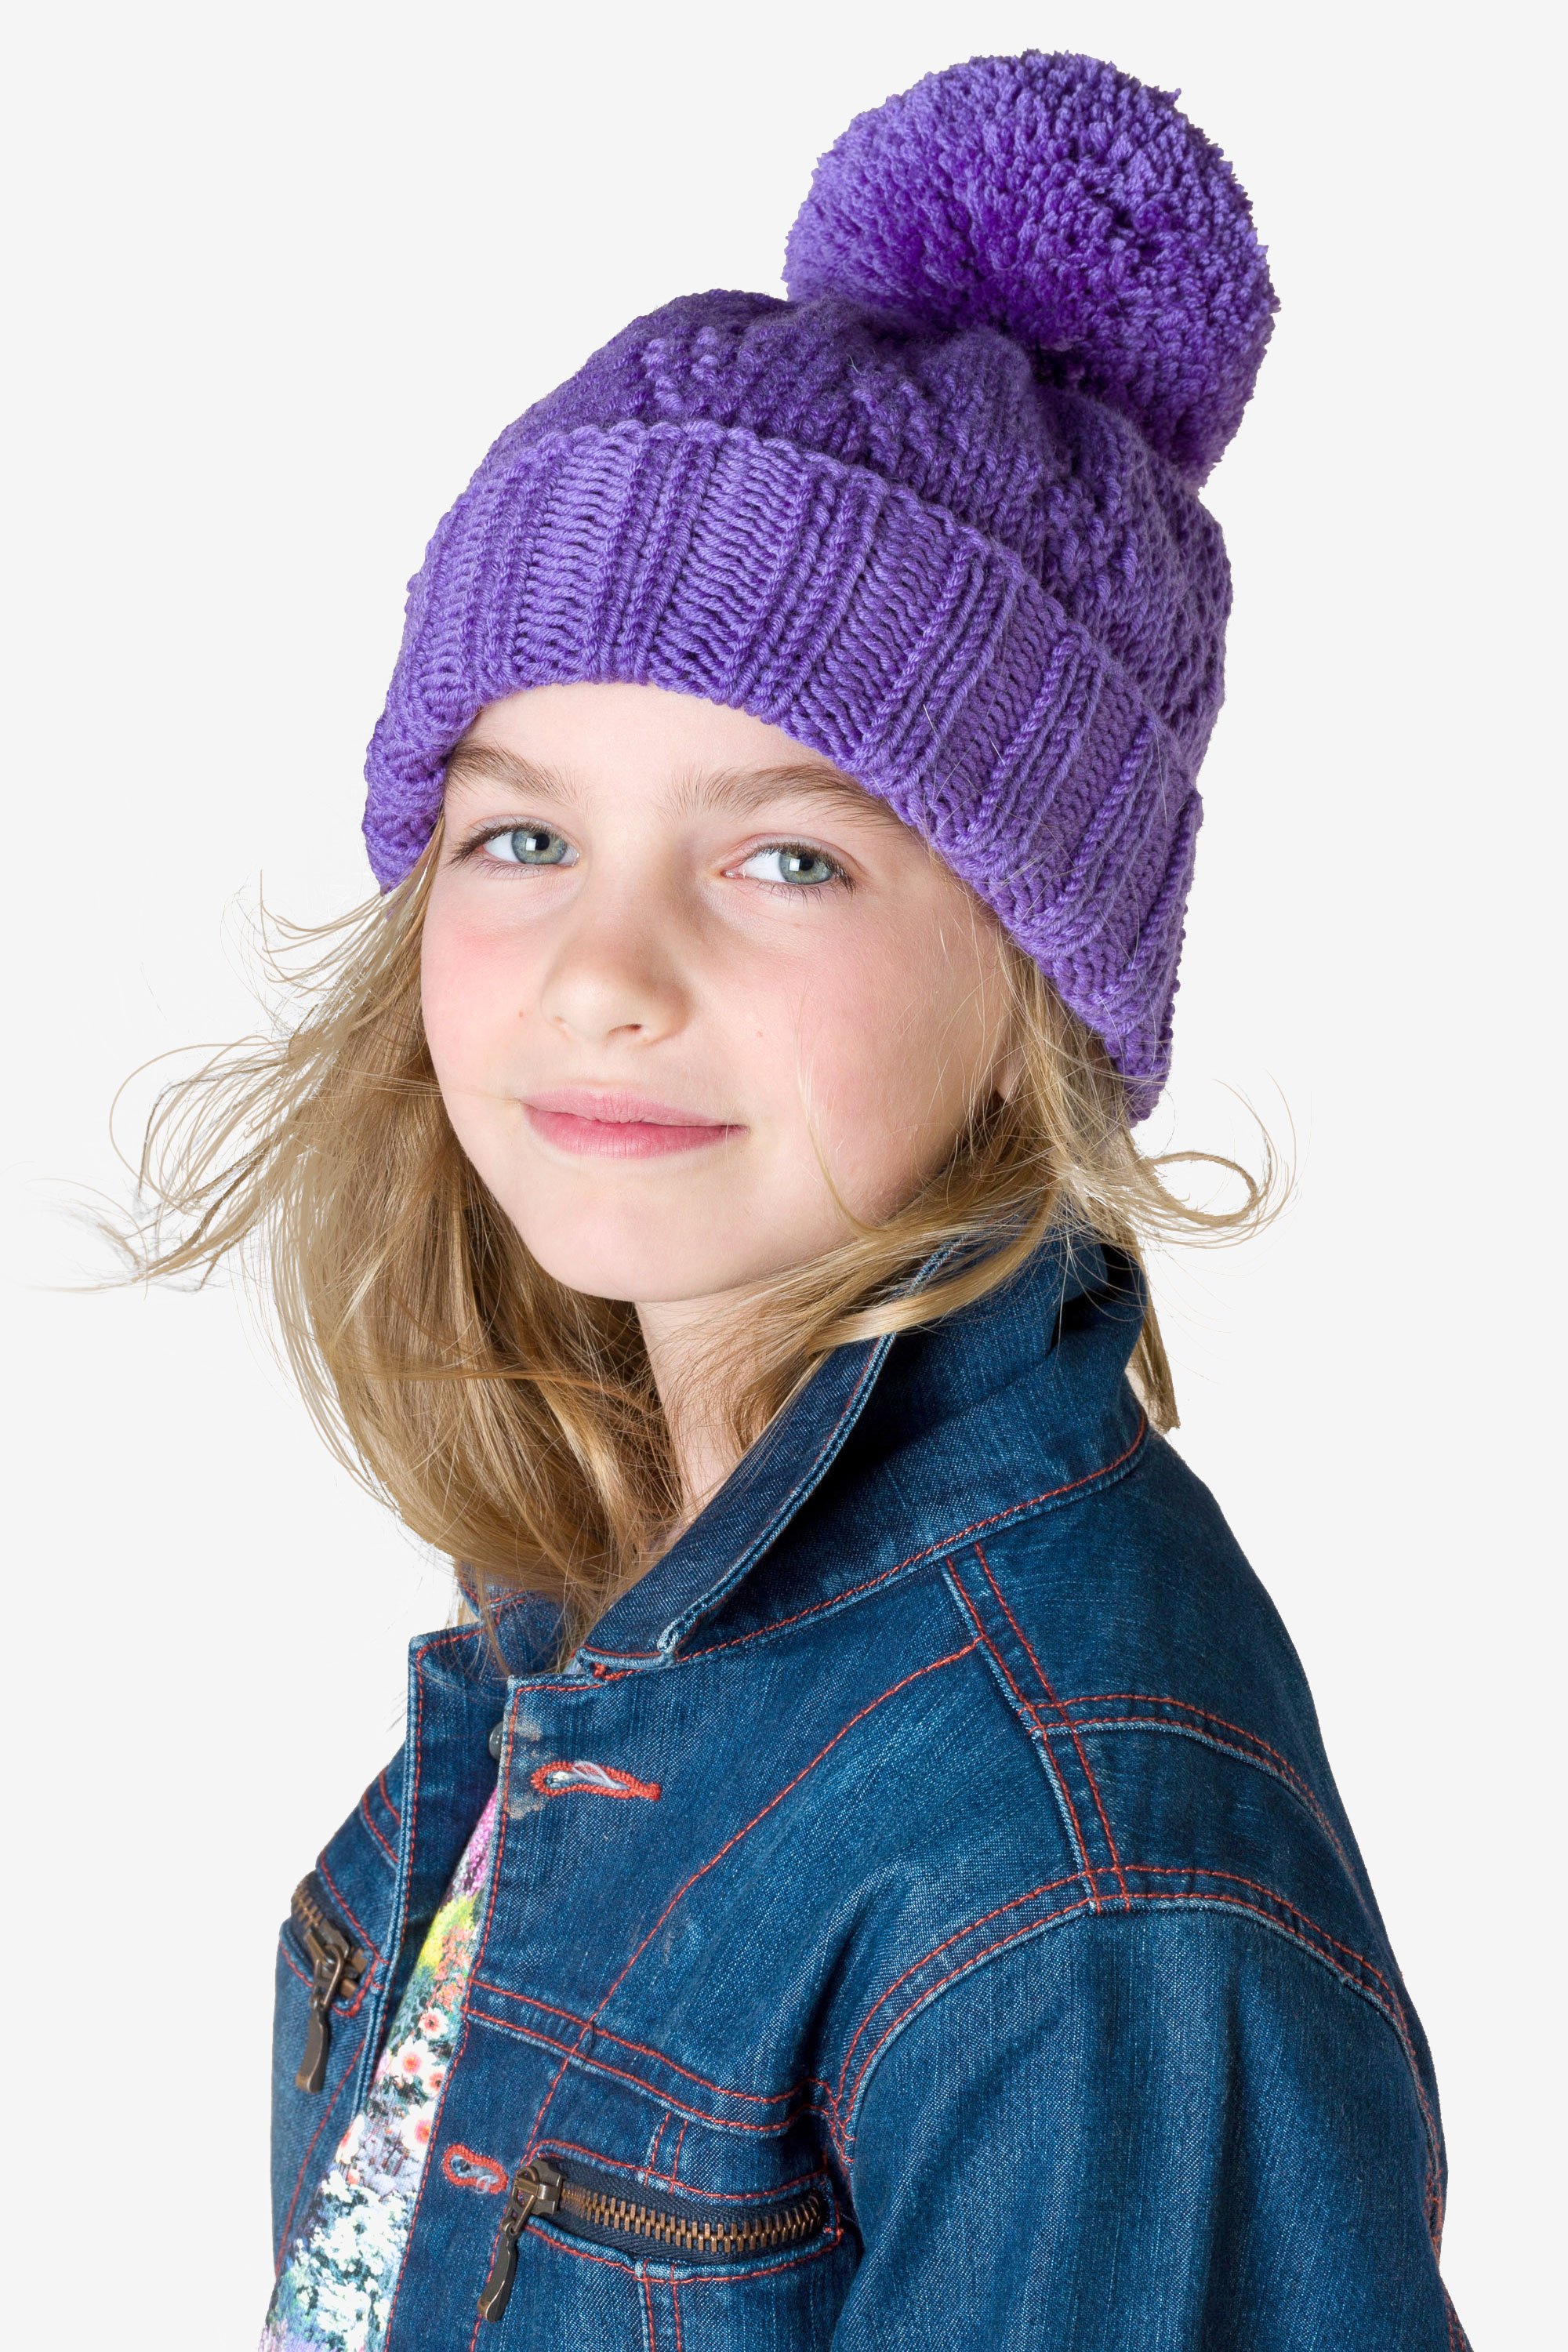 Modele Woolly 5 Bonnet Pour Enfant Explications Offertes Modeles Enfant Dmc